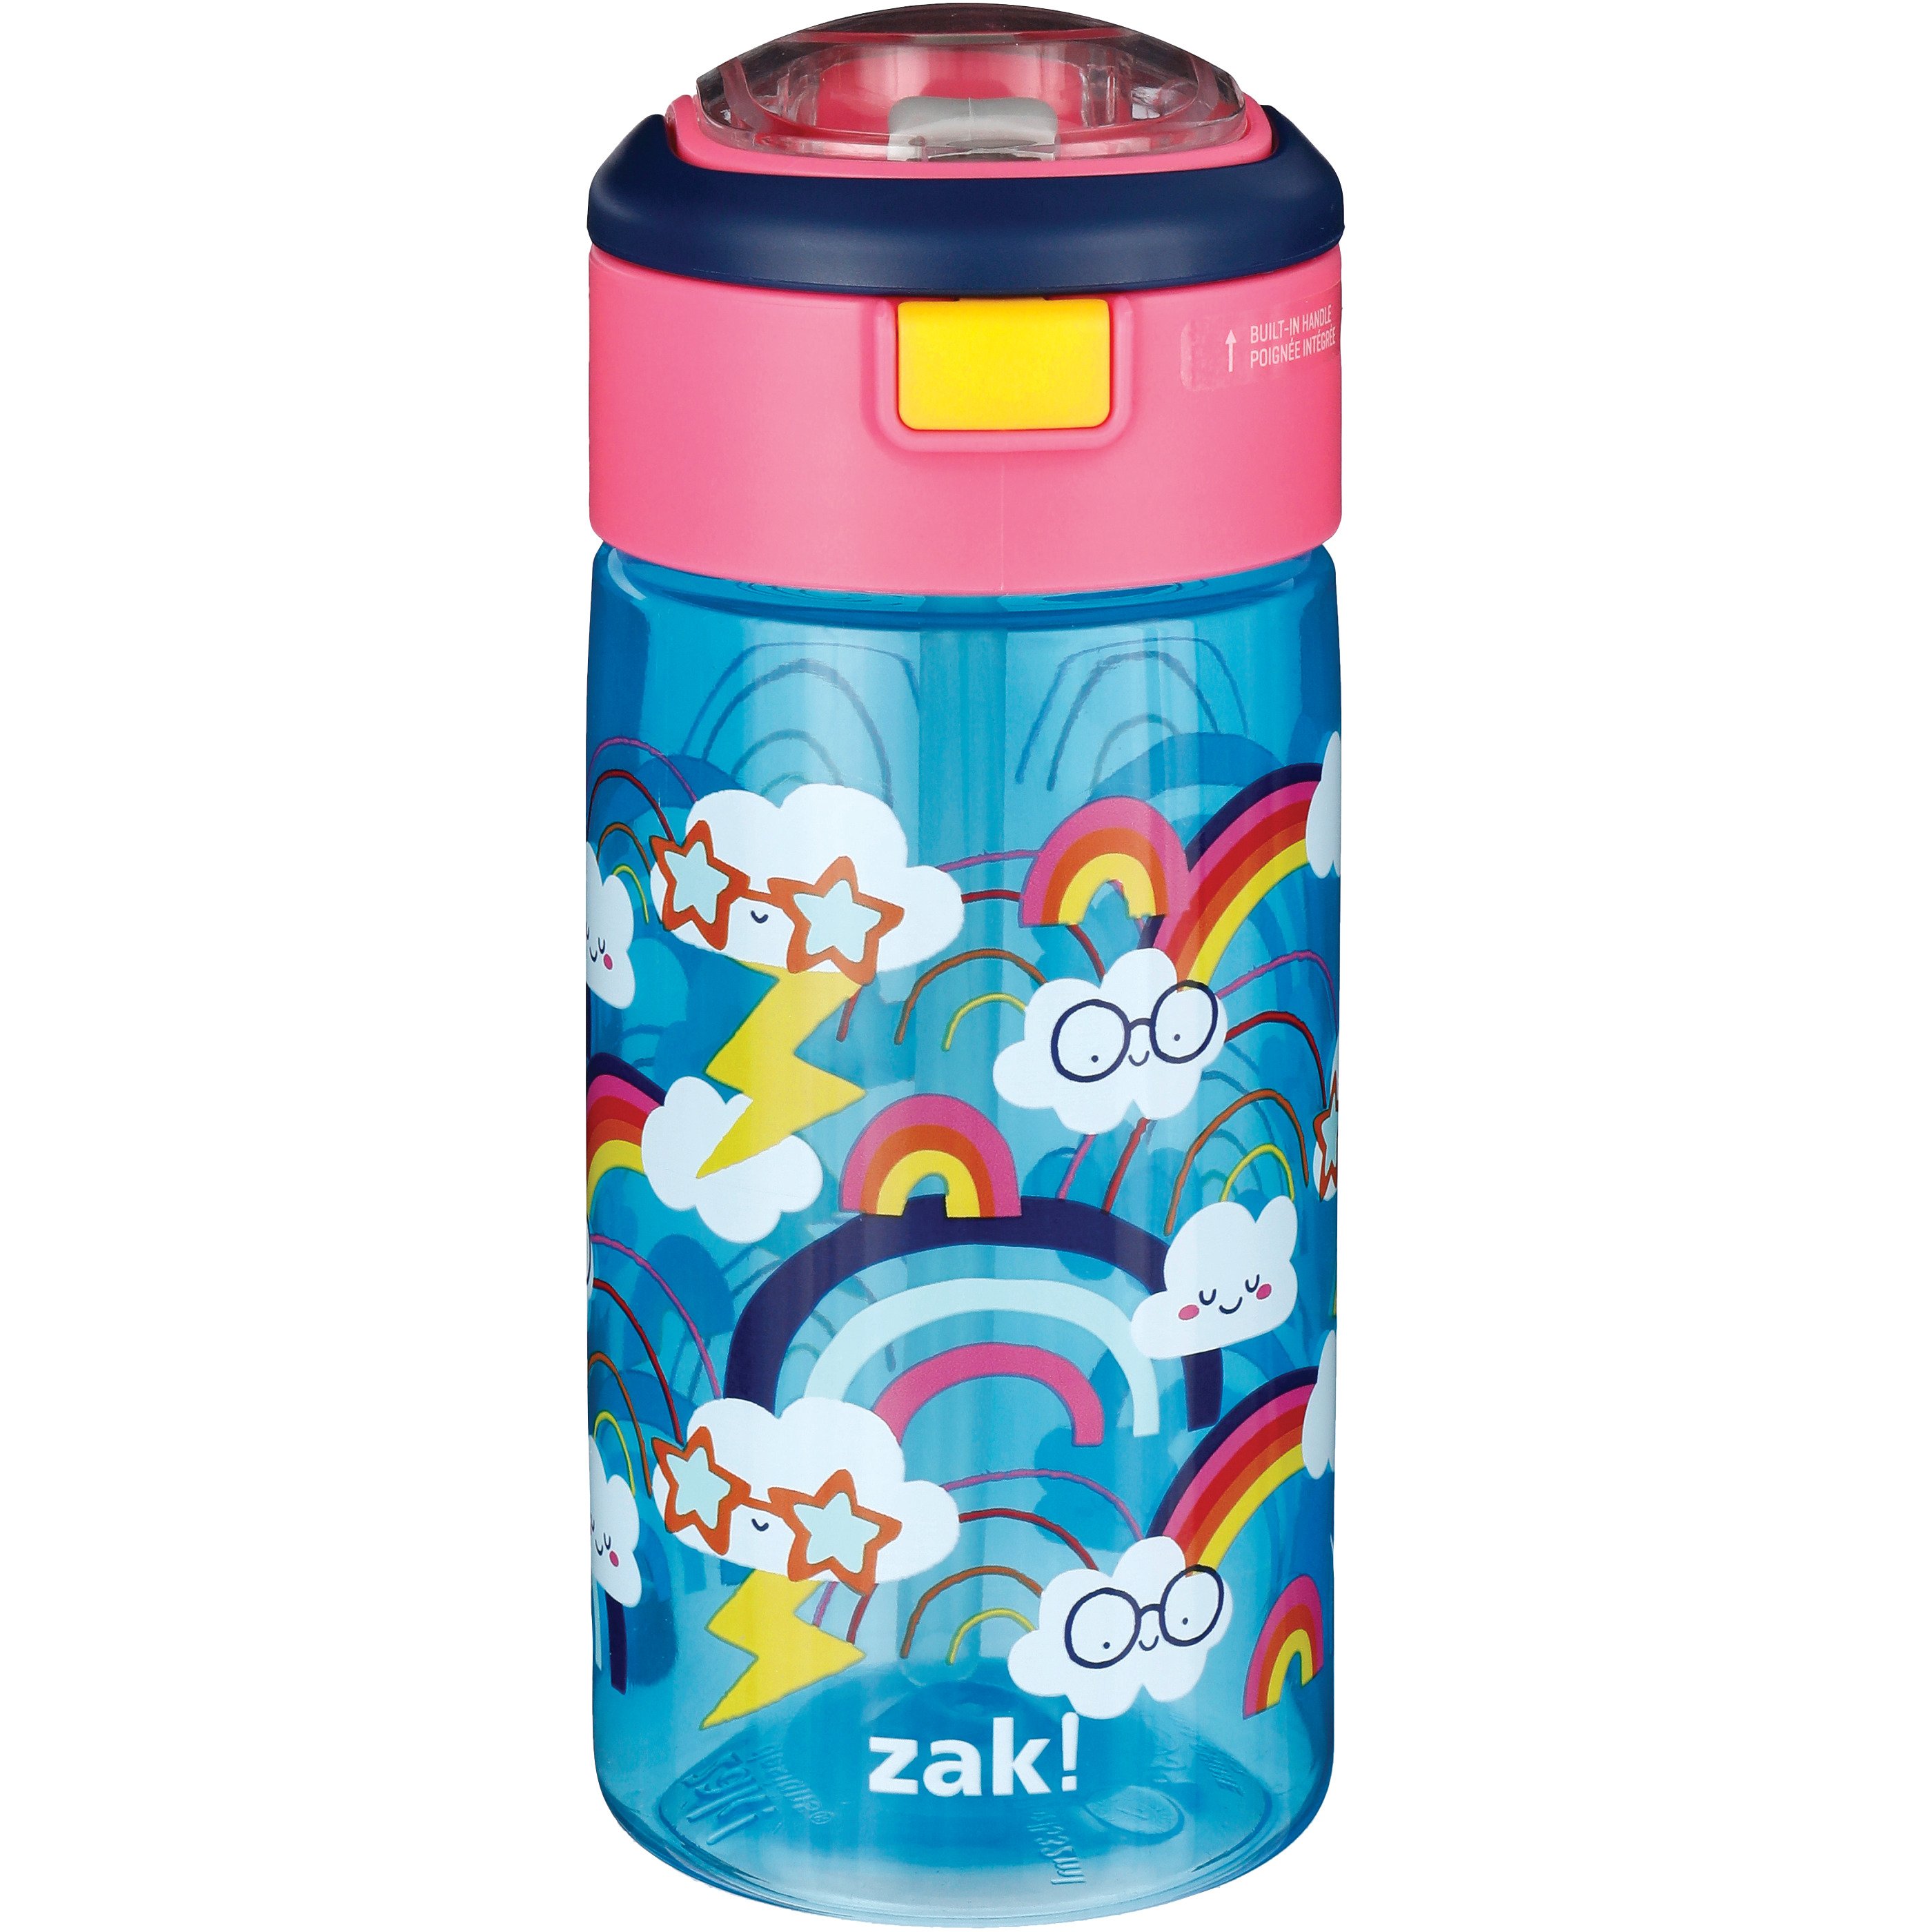 Zak Designs Genesis Flex Reusable Plastic Water Bottle – Blue